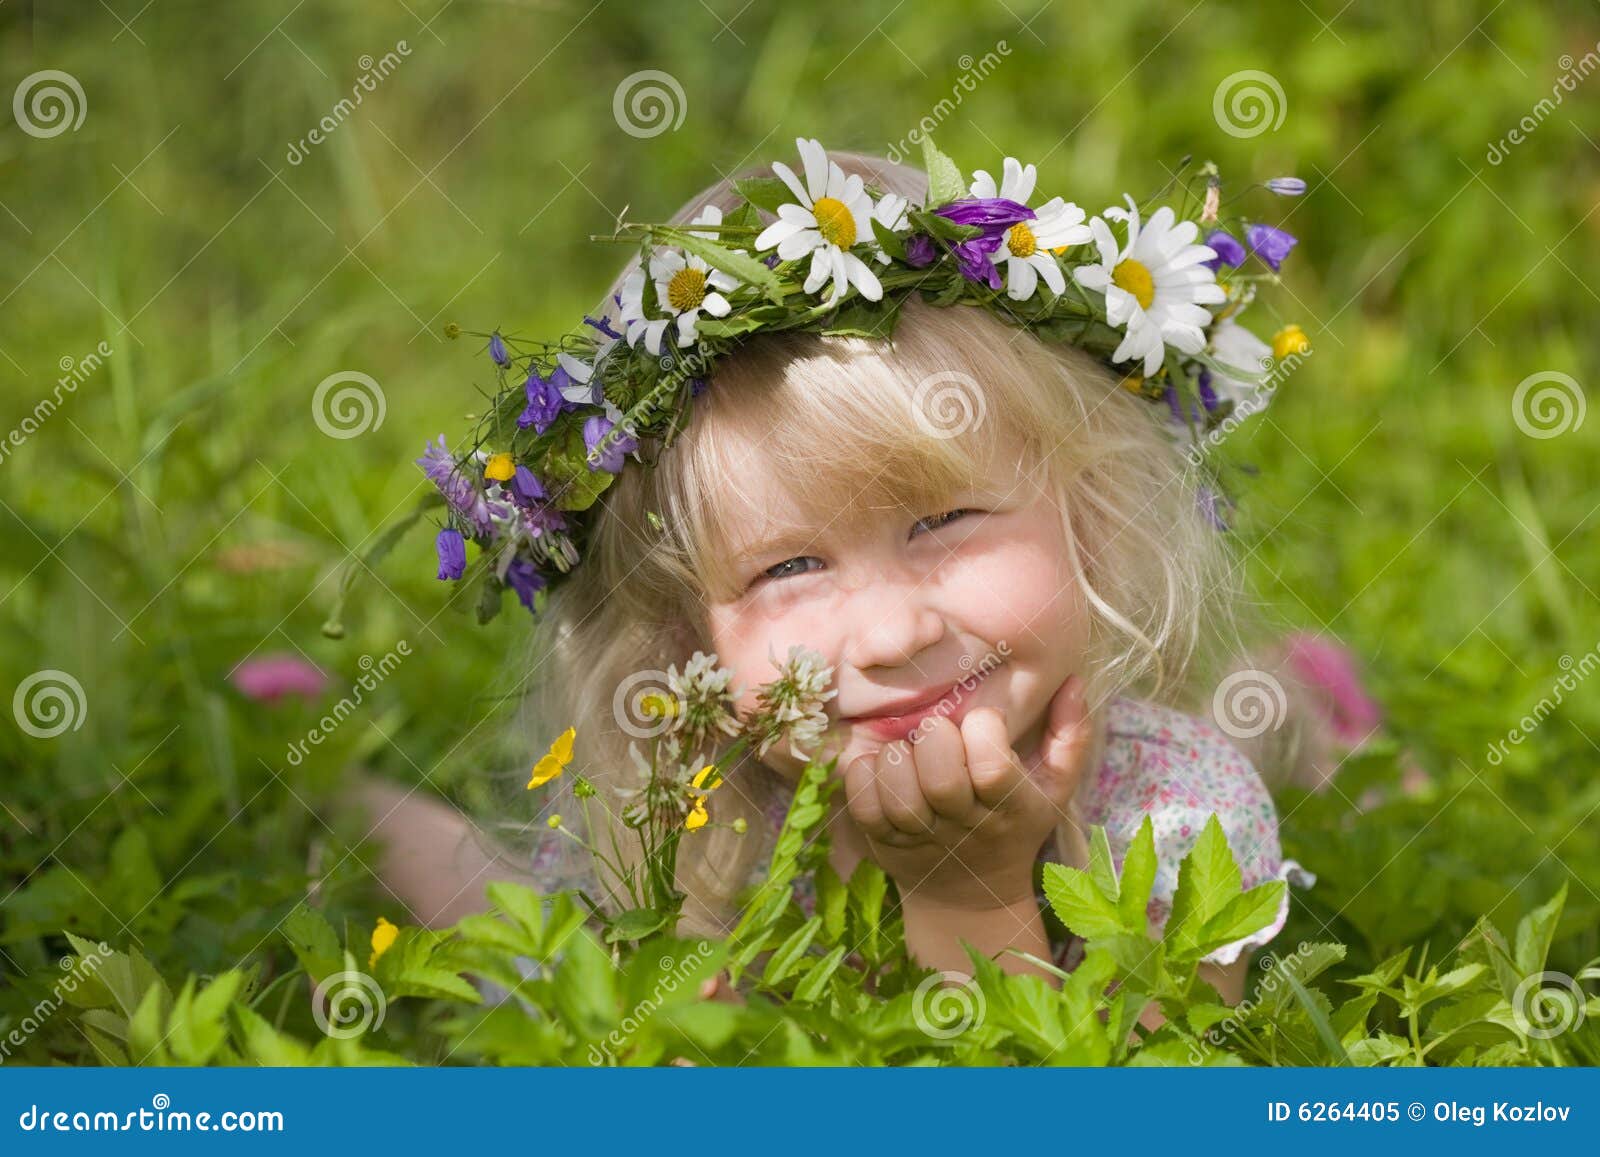 Самая счастливая выглянуло. Девочка с цветами радостная. Выглянуло солнышко блещет на лугу. И ромашки белые рву я на лету. Я веночек сделаю в солнышко вплету песня.